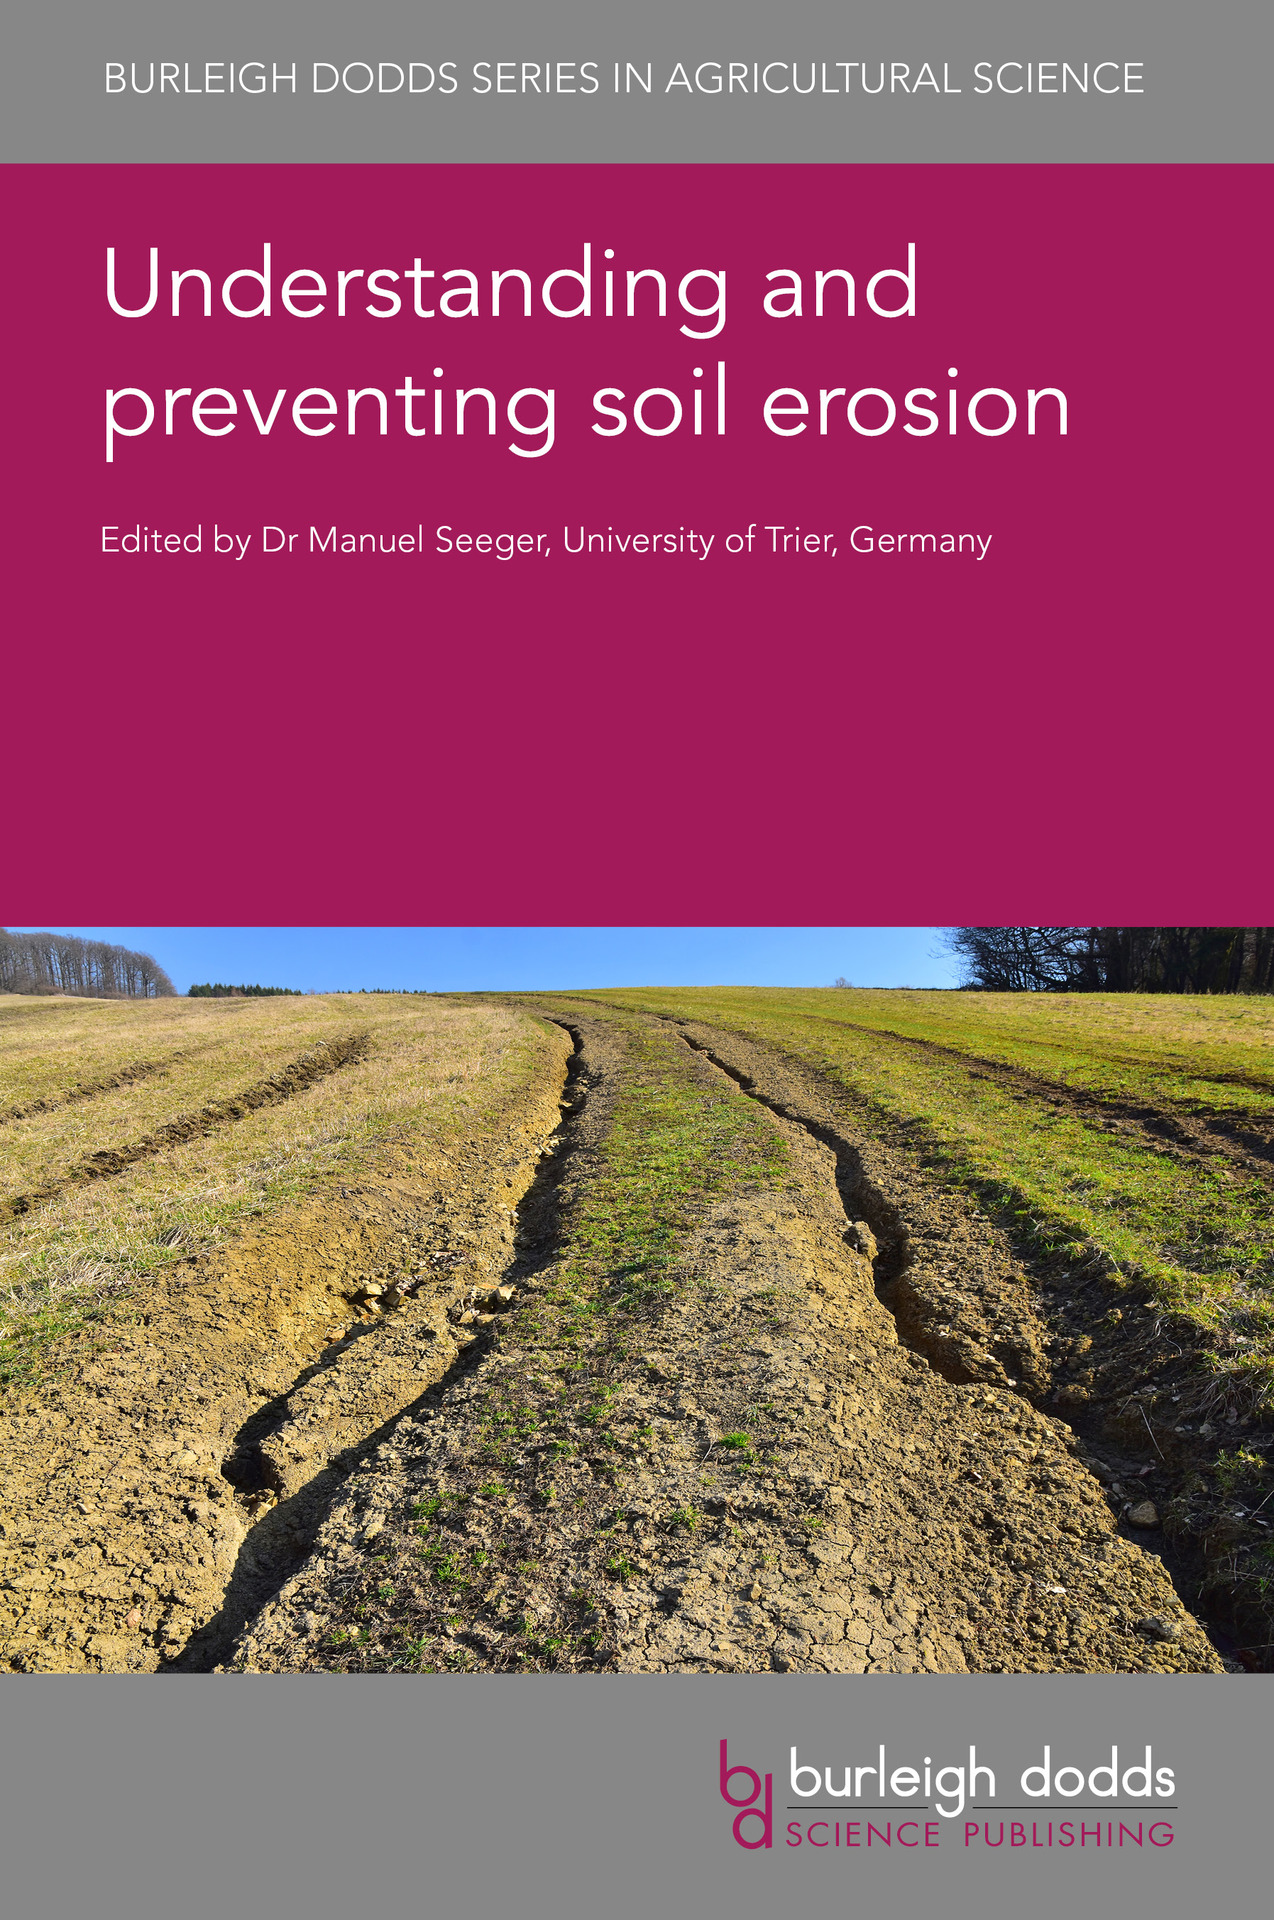 eroded soil in field